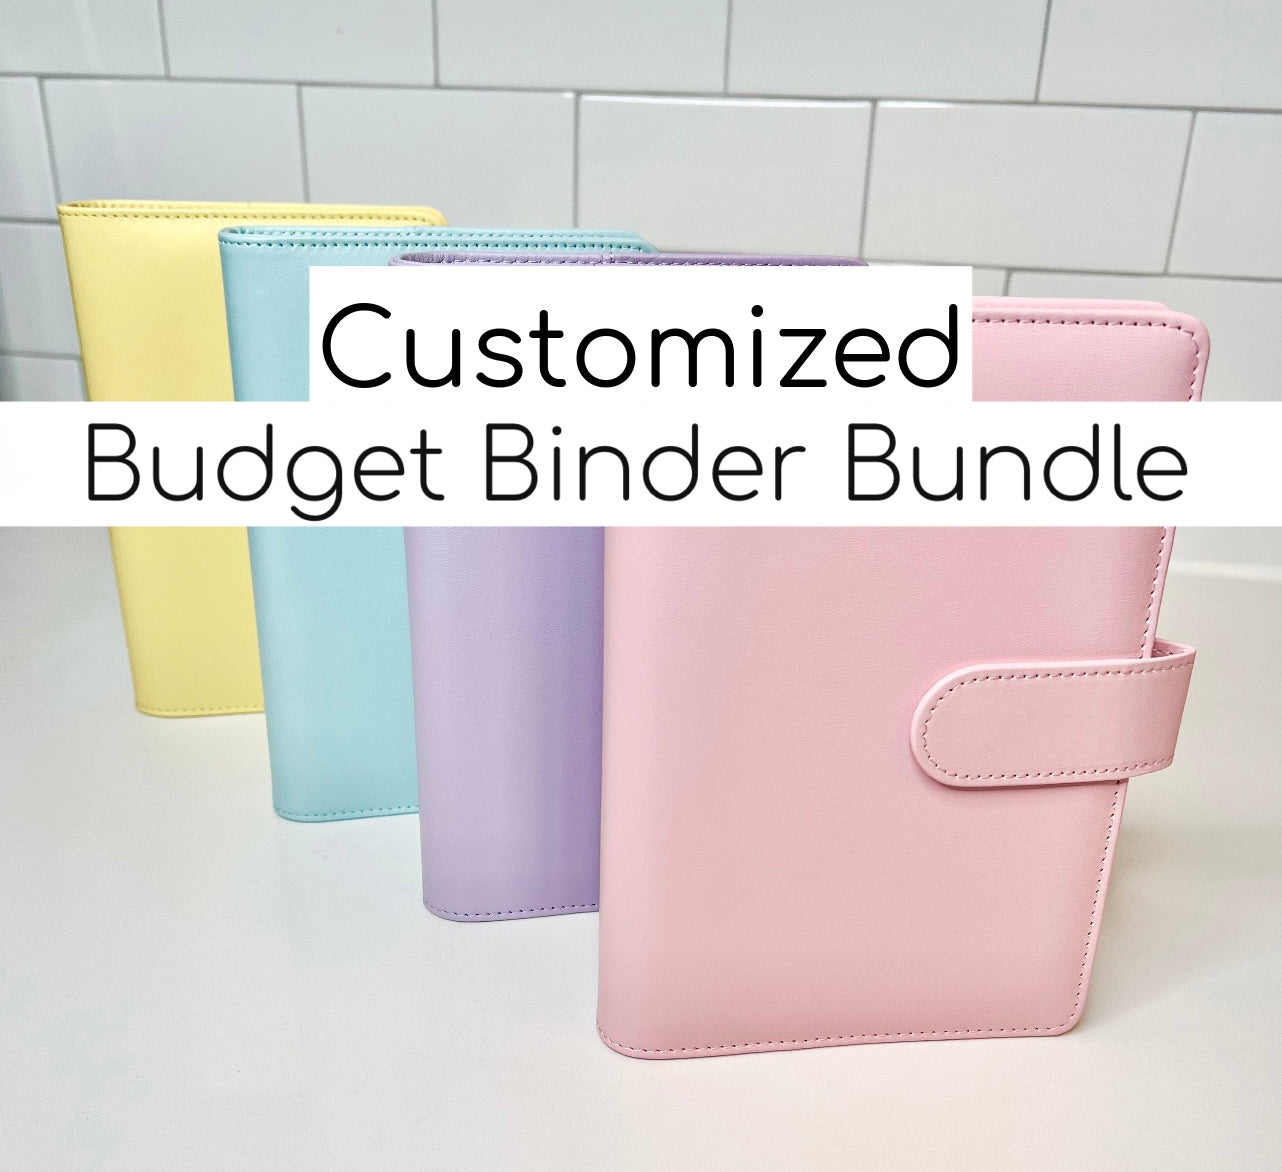 Customized Budget Binder Bundle A6